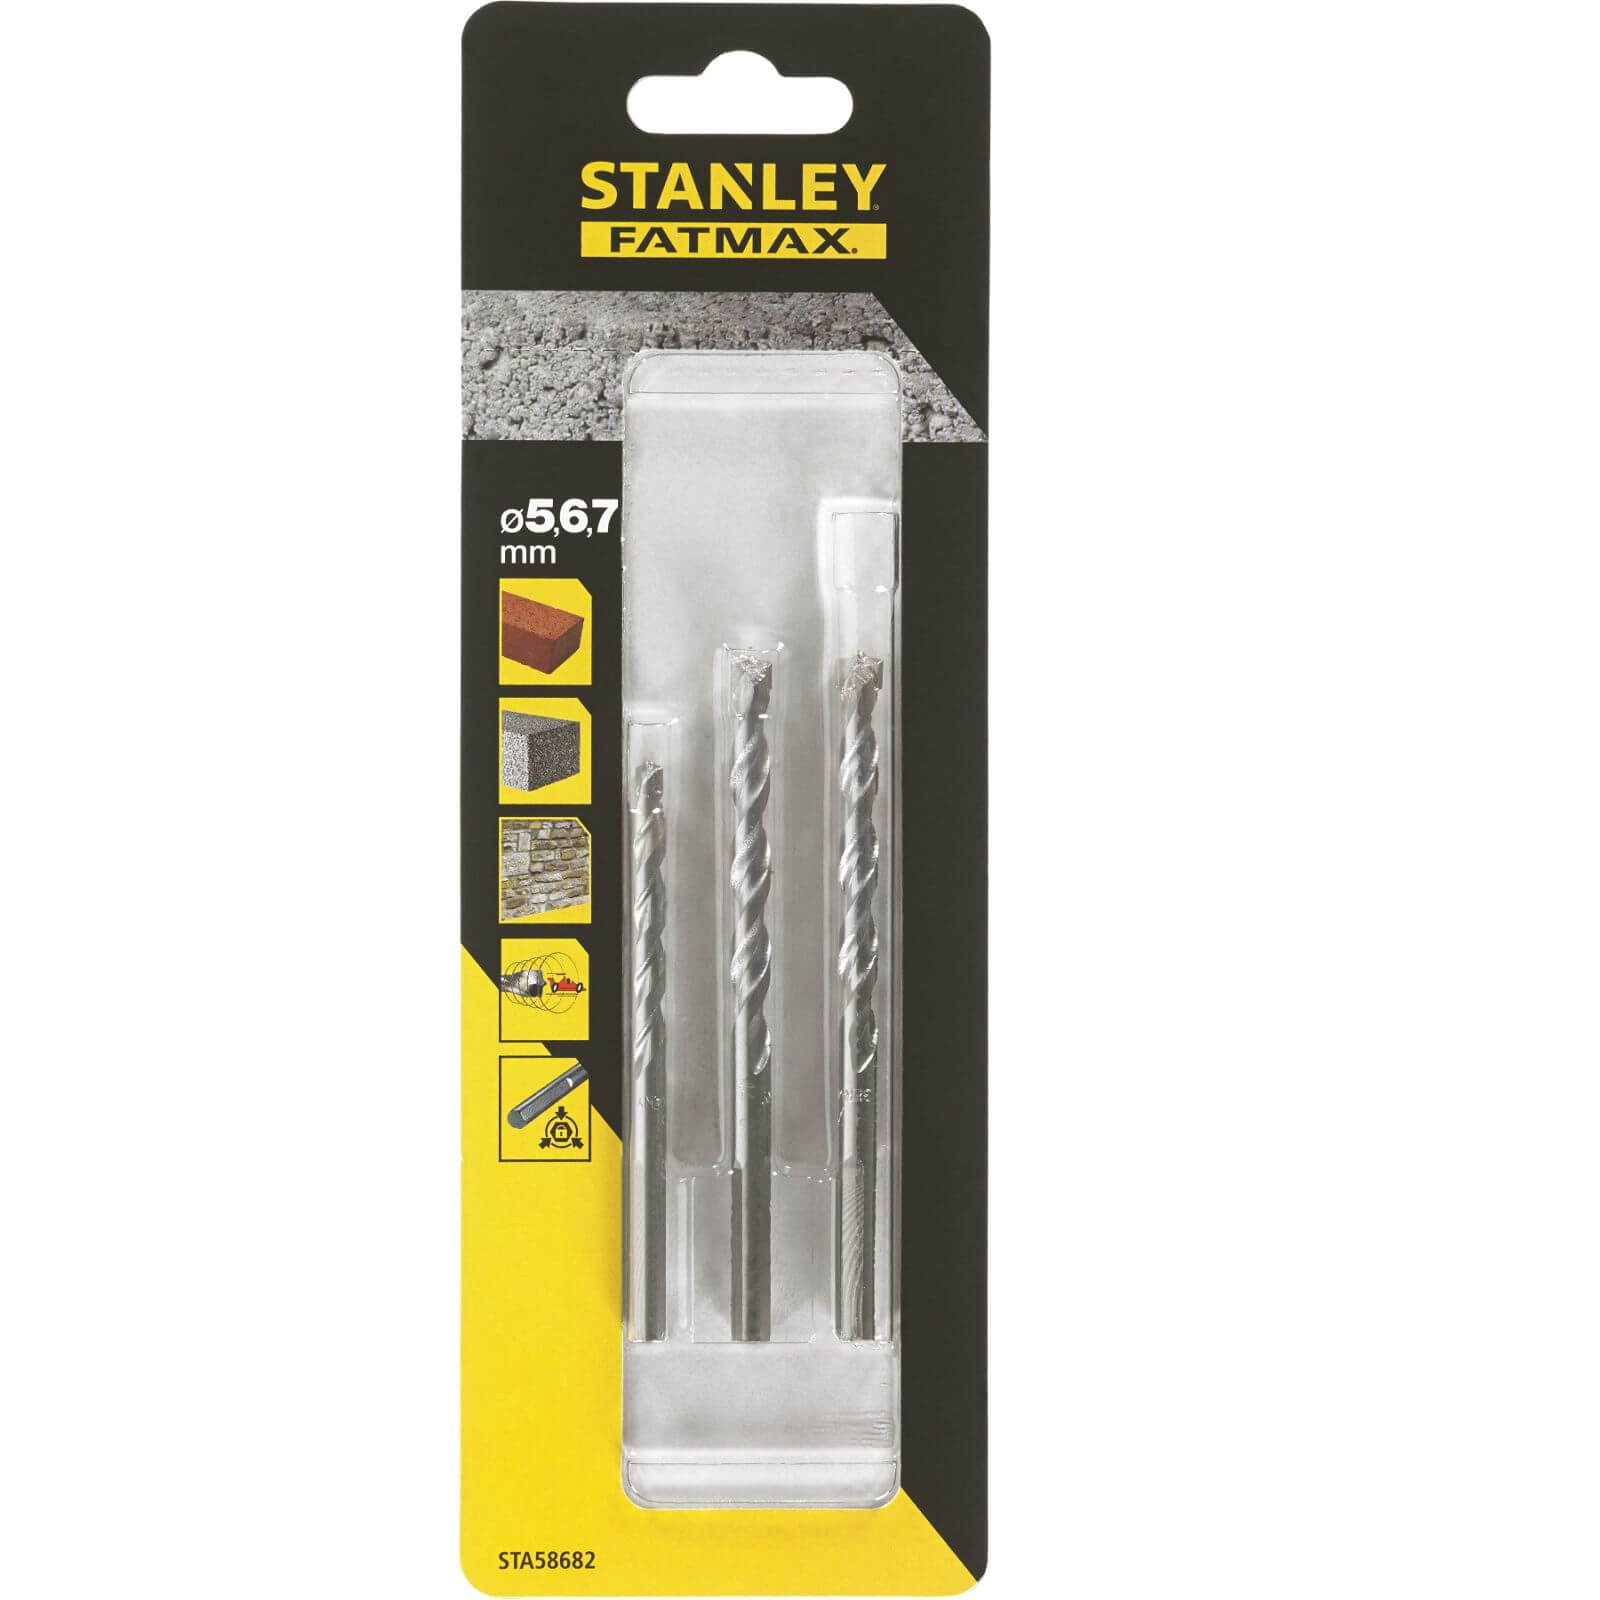 Stanley Fatmax 3Pc Masonry Drill Bit Set - STA58682-QZ